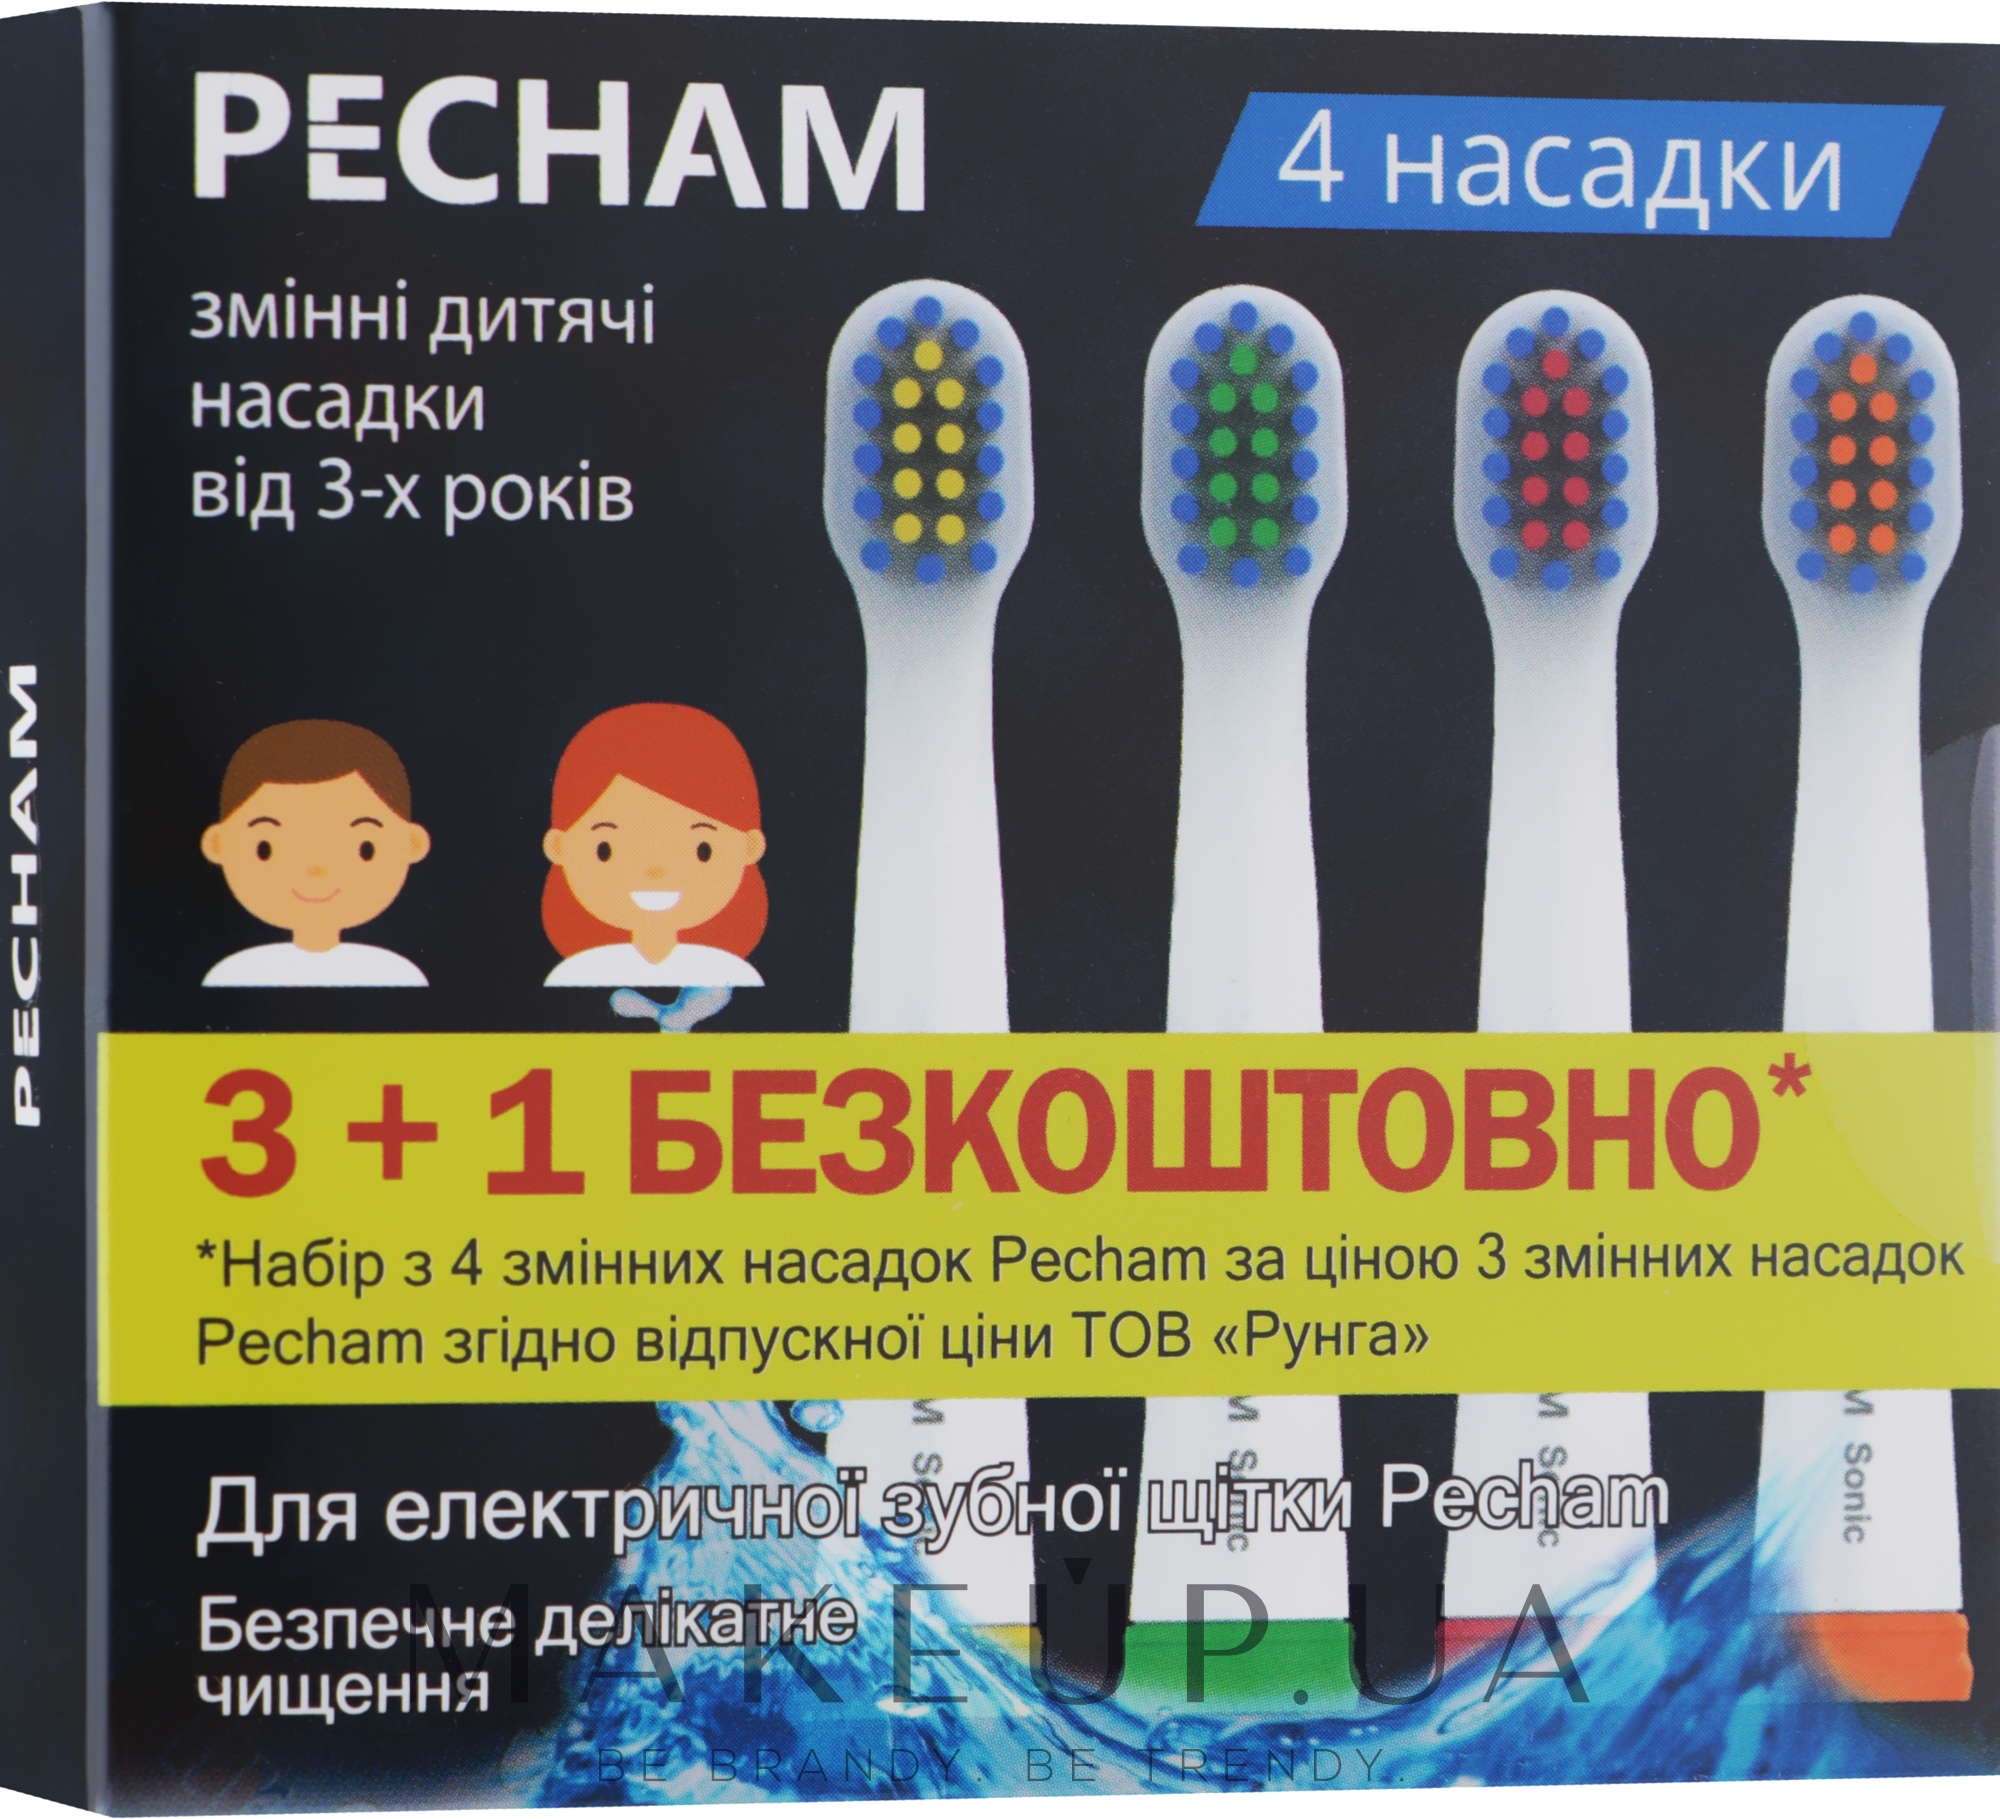 Детские насадки к электрической зубной щетки, белые - Pecham — фото 4шт